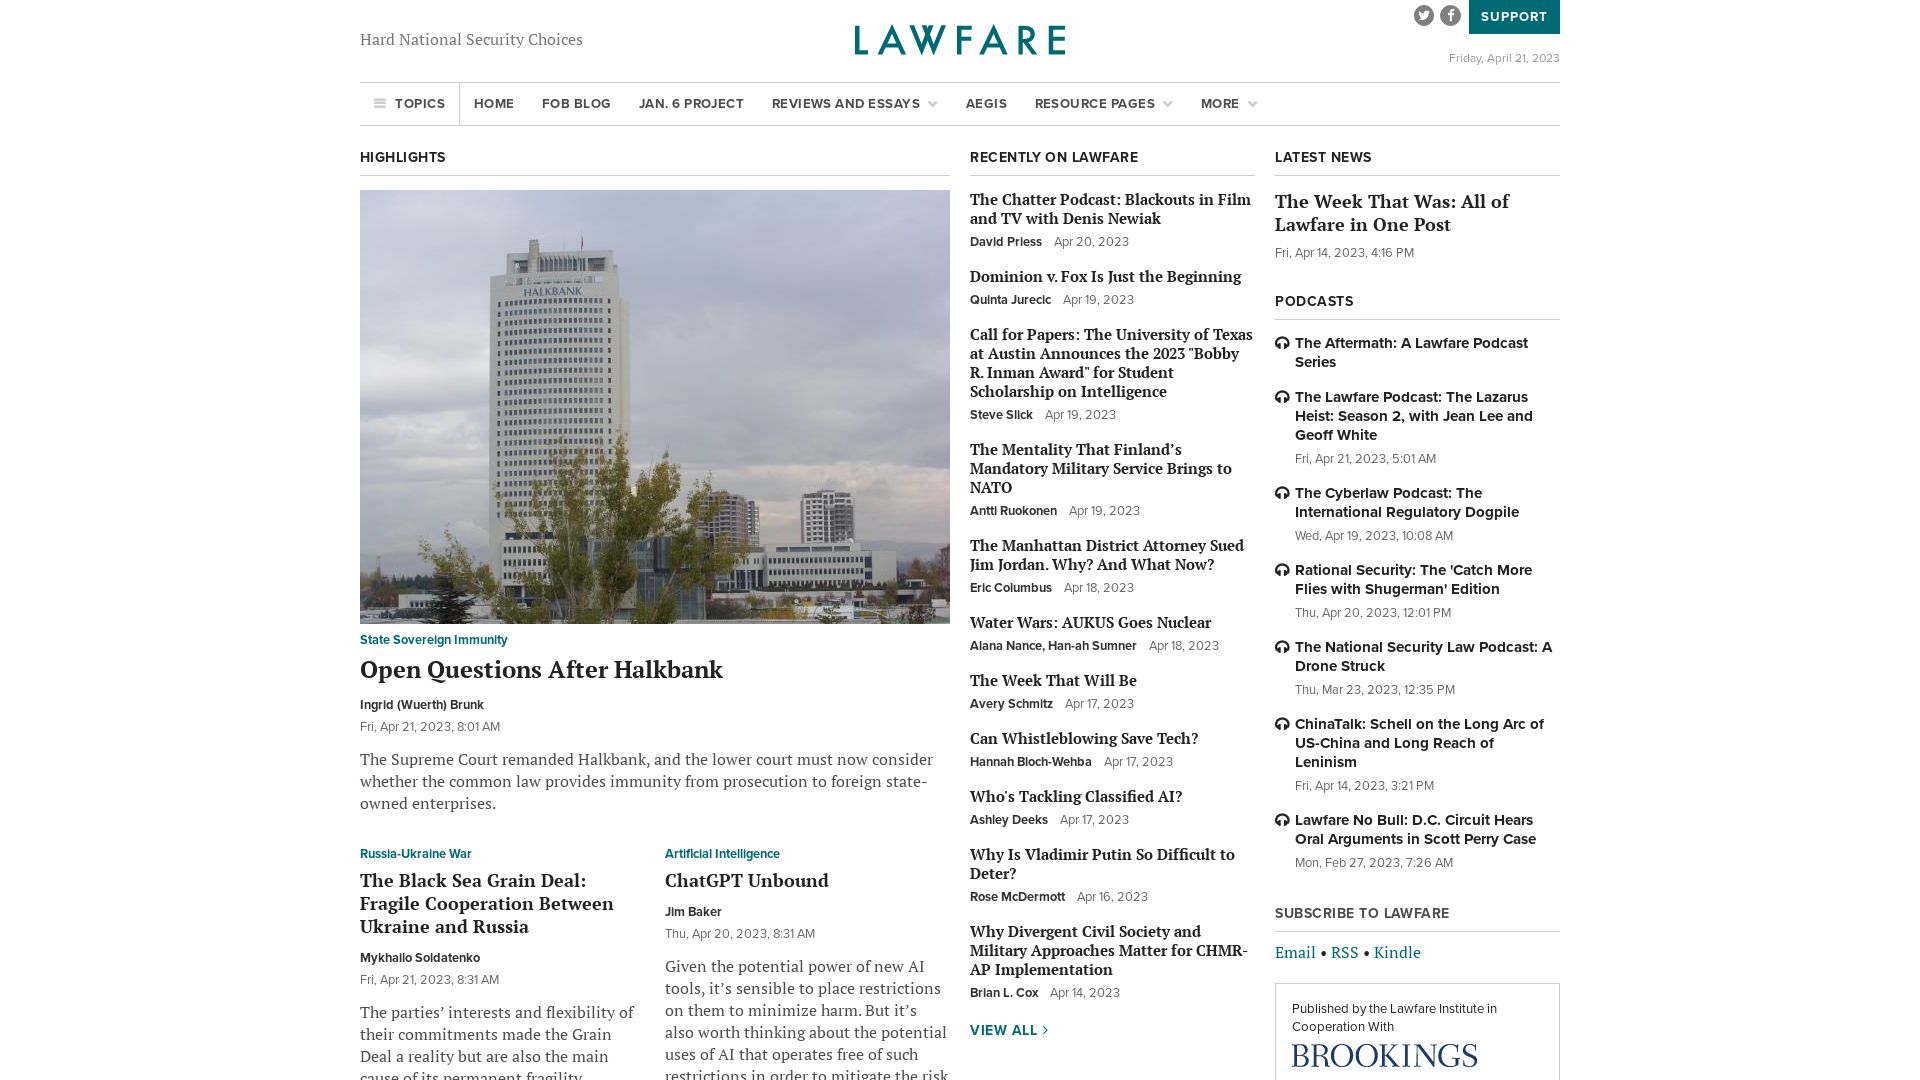 Status do site lawfareblog.com está   ONLINE